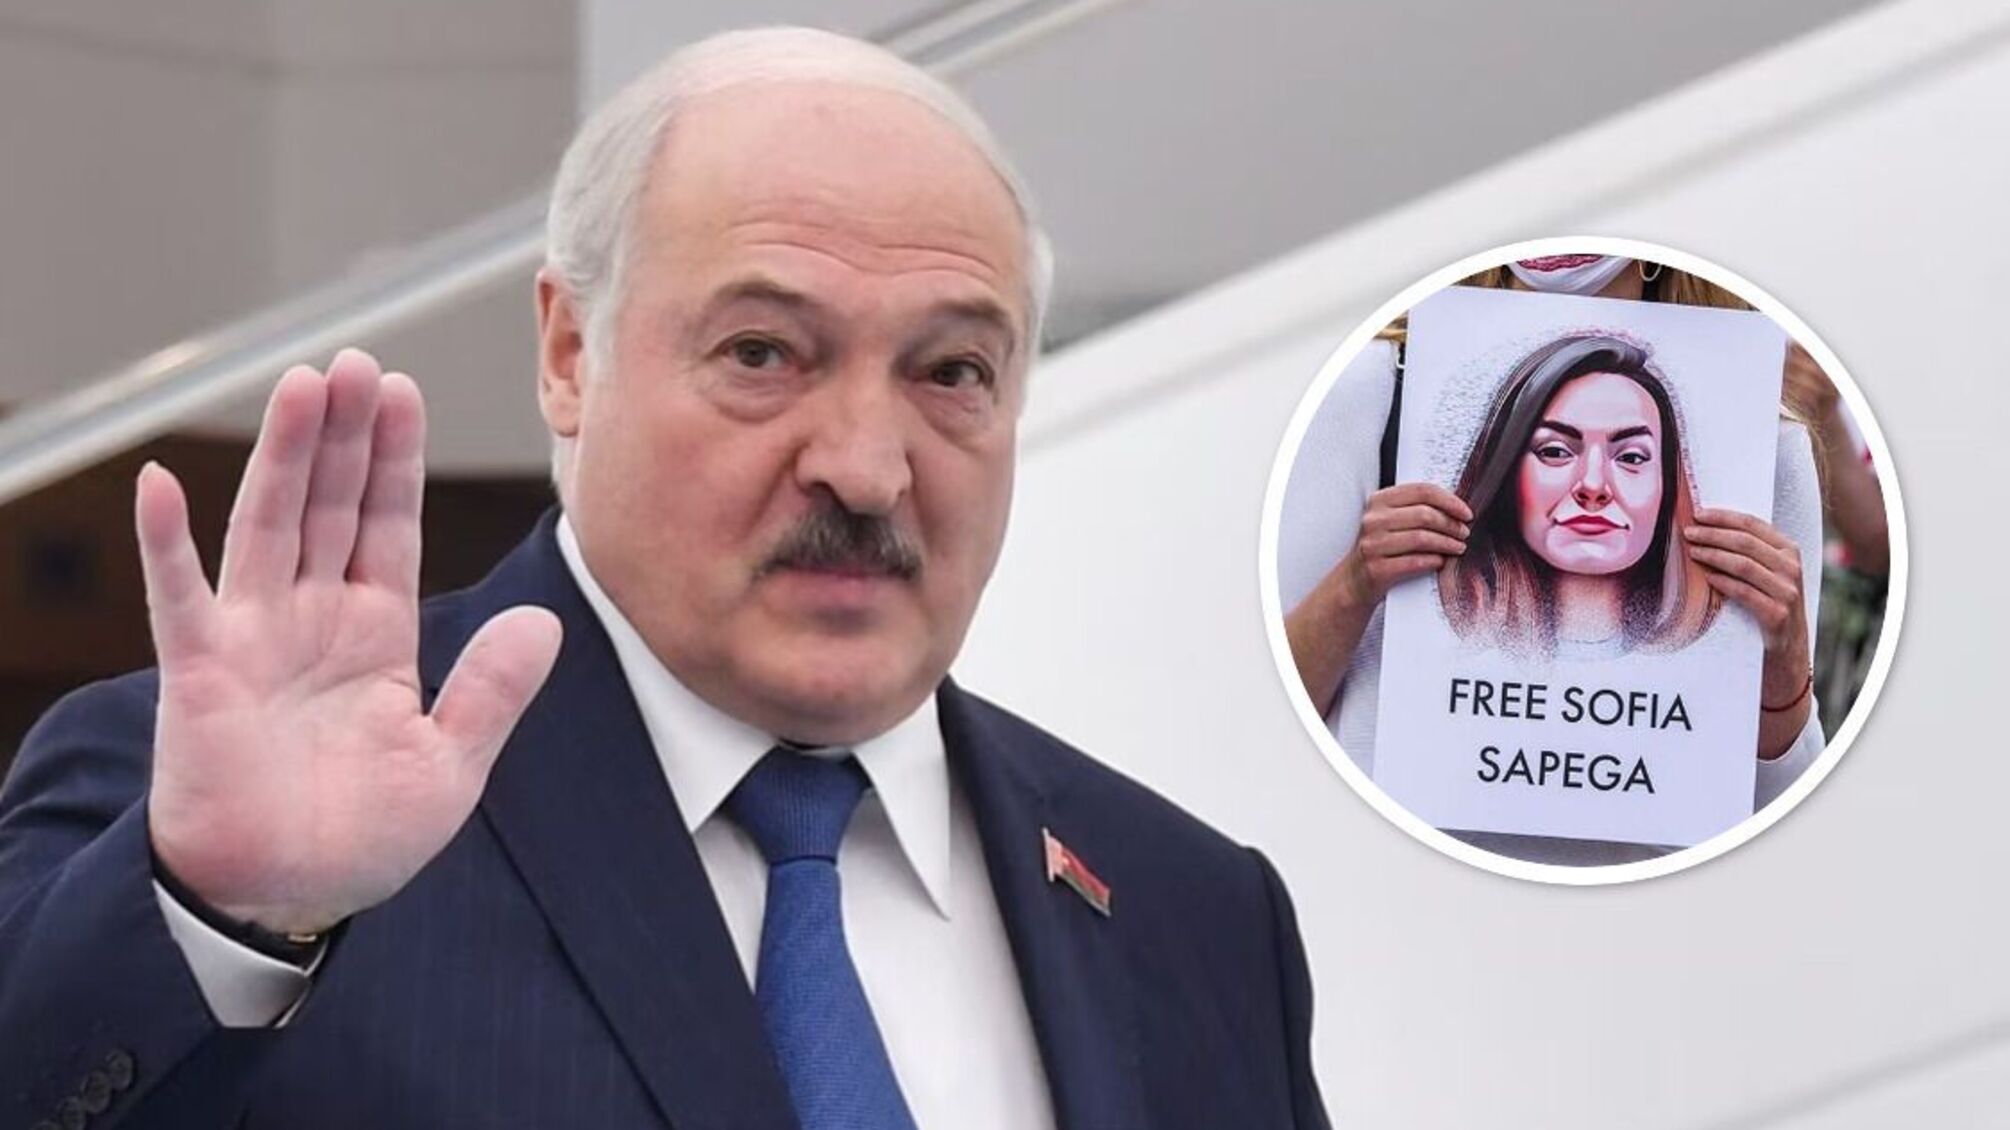 София Сапега получила неожиданный 'подарок' от Лукашенко